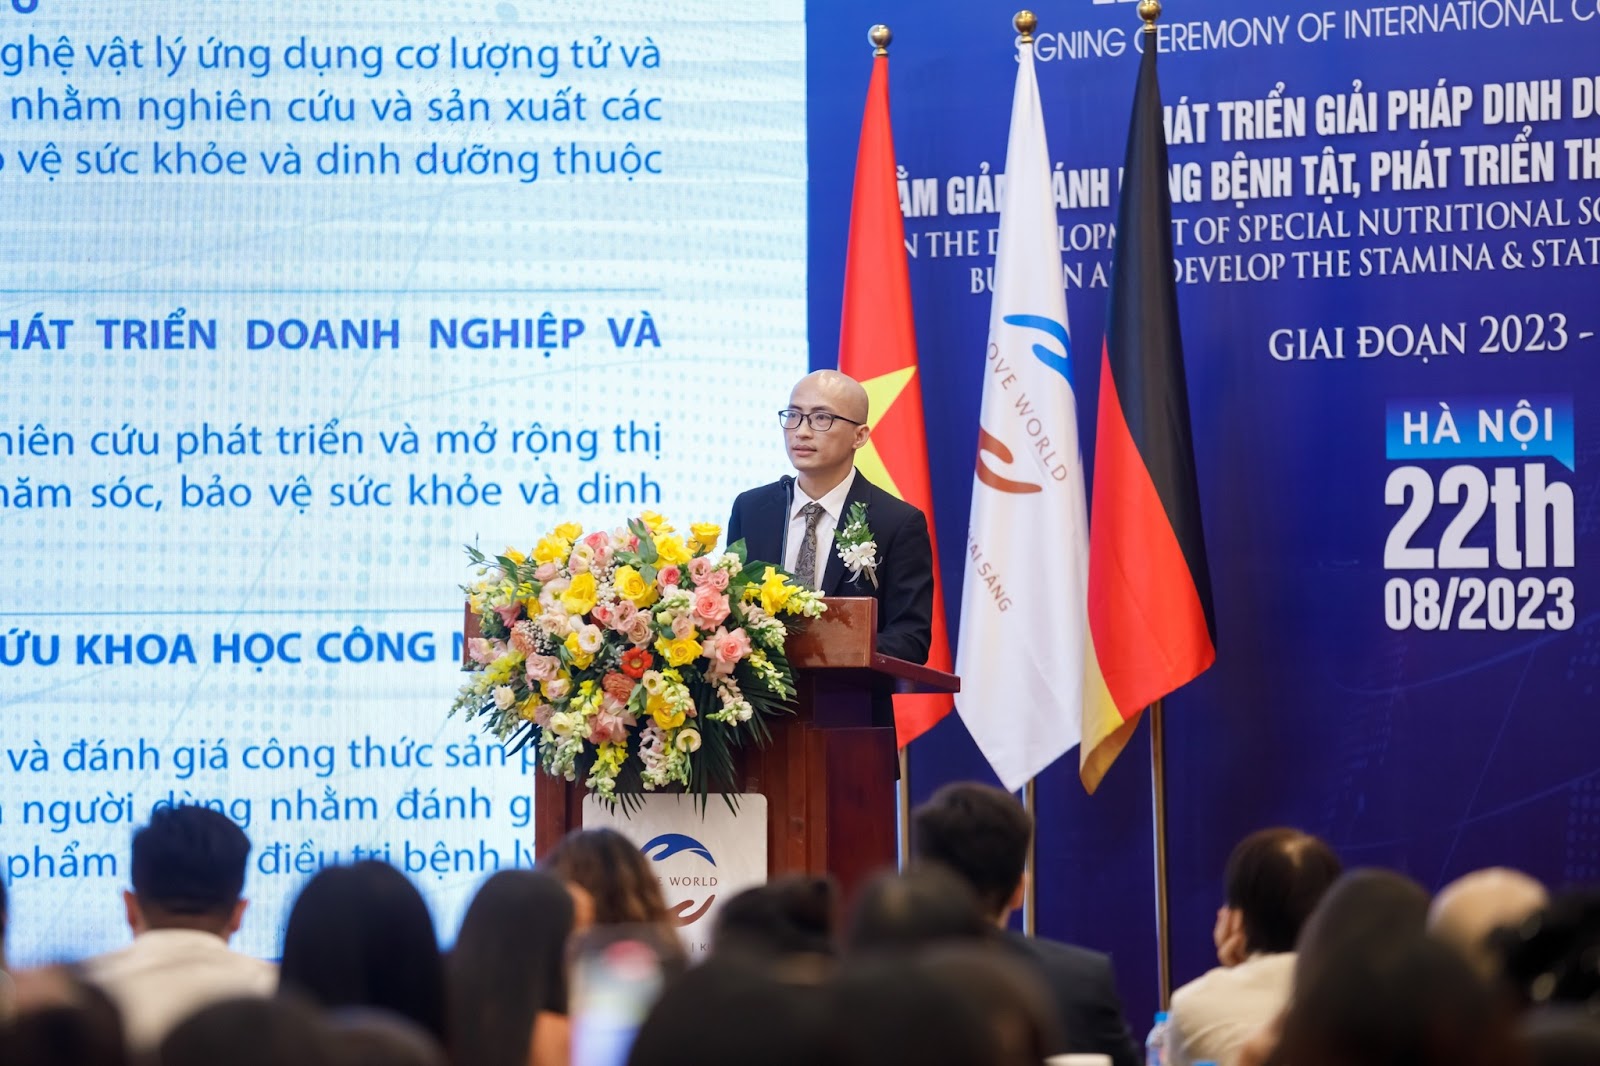 Love World tiên phong đề án hợp tác mang đến giải pháp dinh dưỡng đặc biệt chất lượng quốc tế cho người Việt - 1